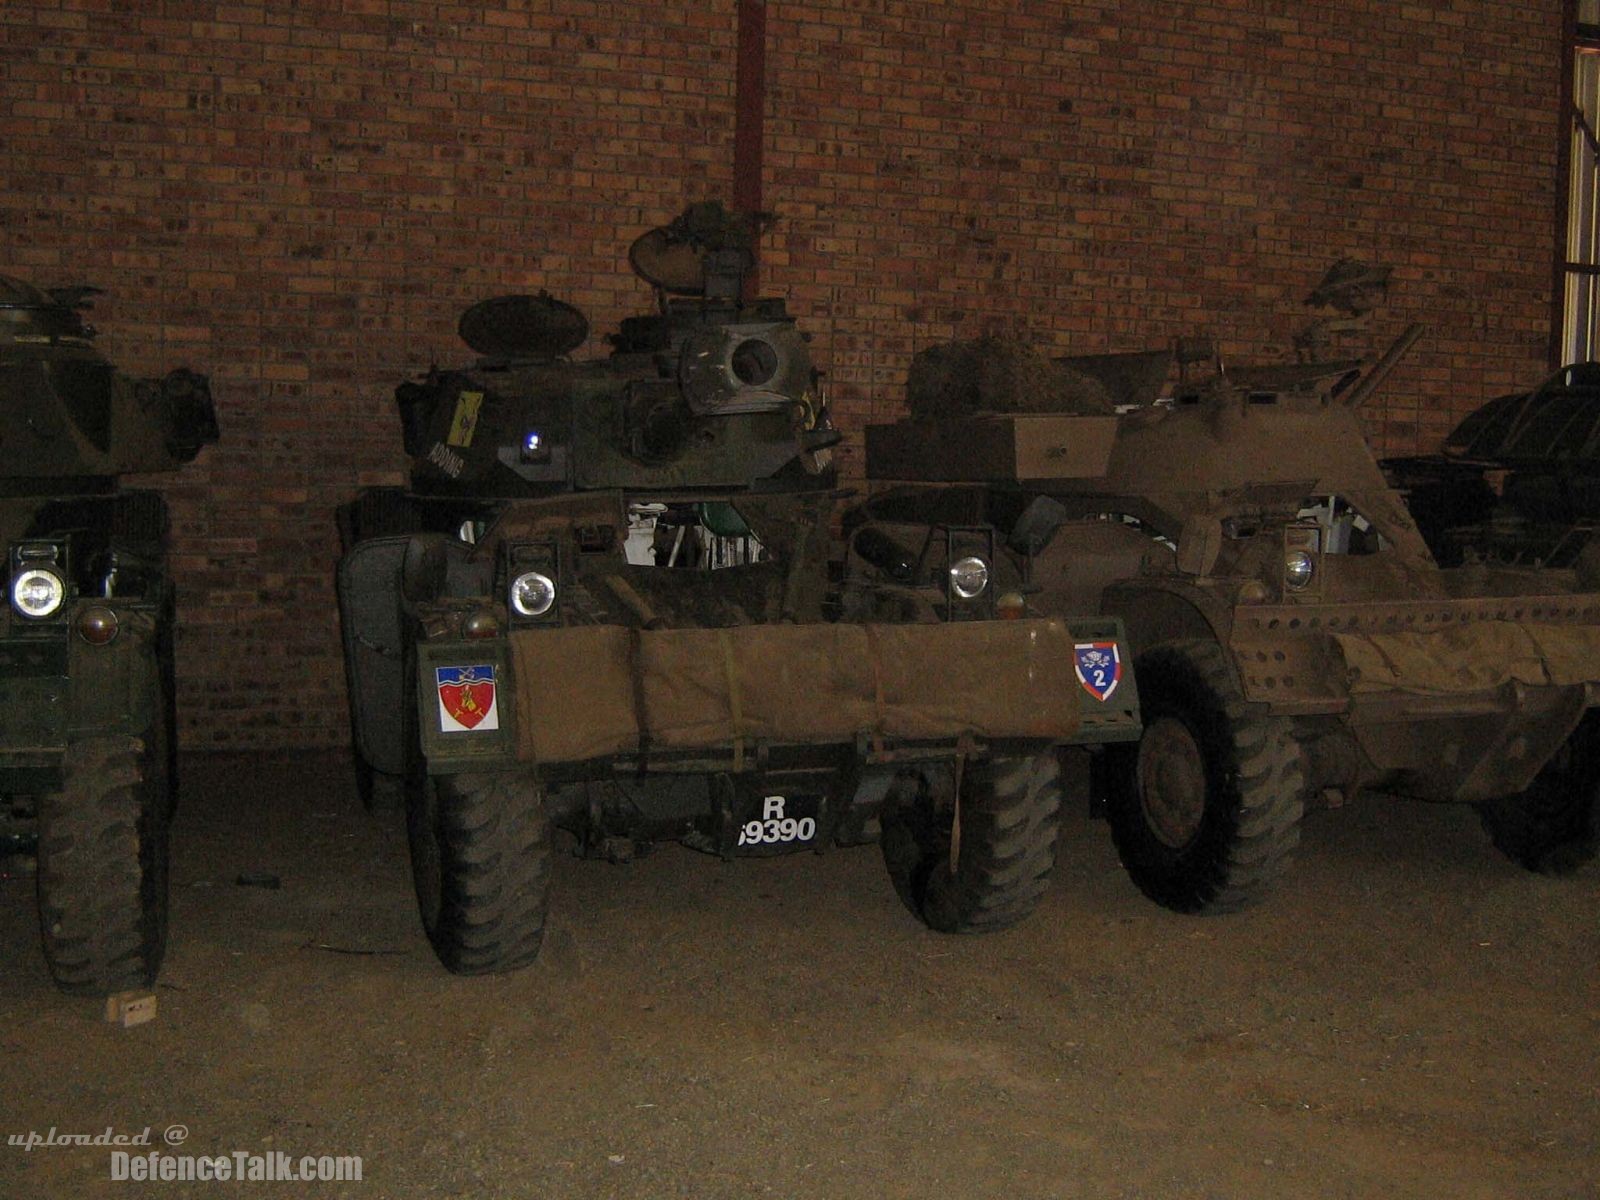 Eland 60/90 series wheeled reconnaissance vehicle